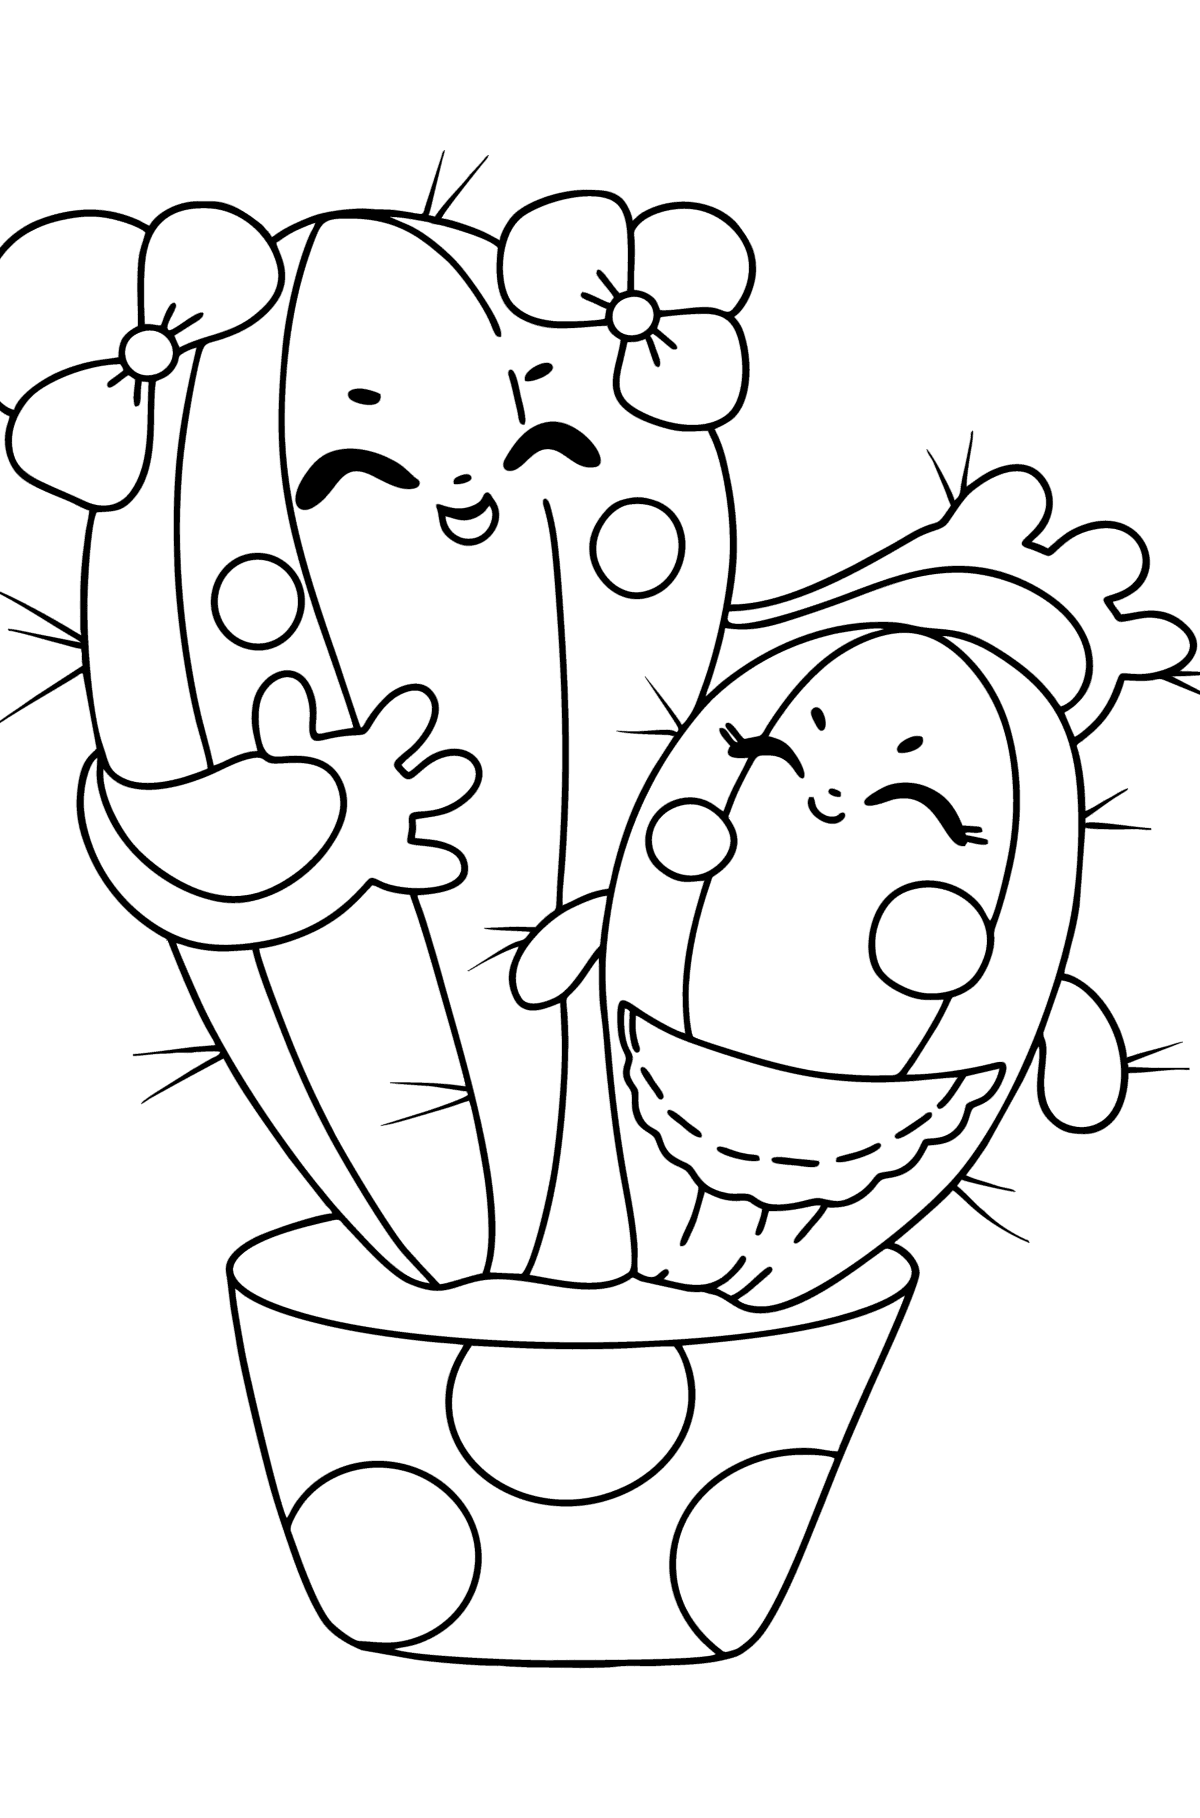 Desenho para colorir de Cartoon Cactus - Imagens para Colorir para Crianças